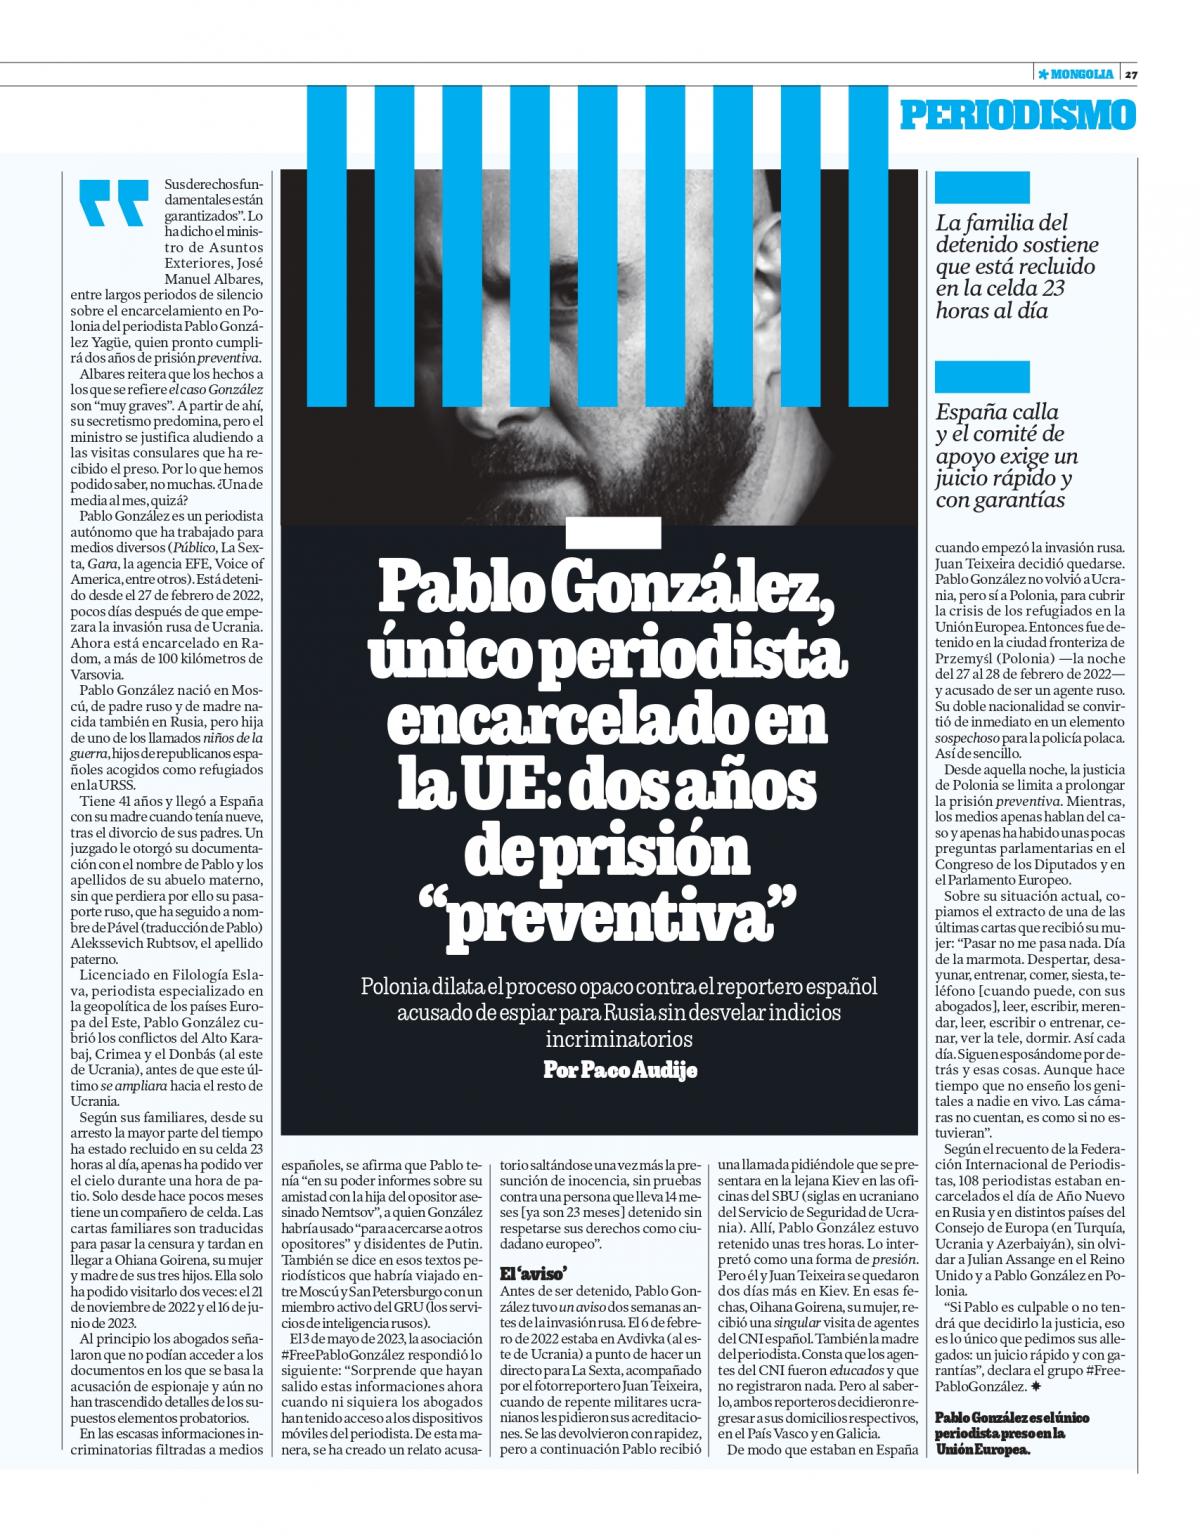 Artículo publicado por Paco Audije sobre el caso del periodista español encarcelado en Polonia. / FIP